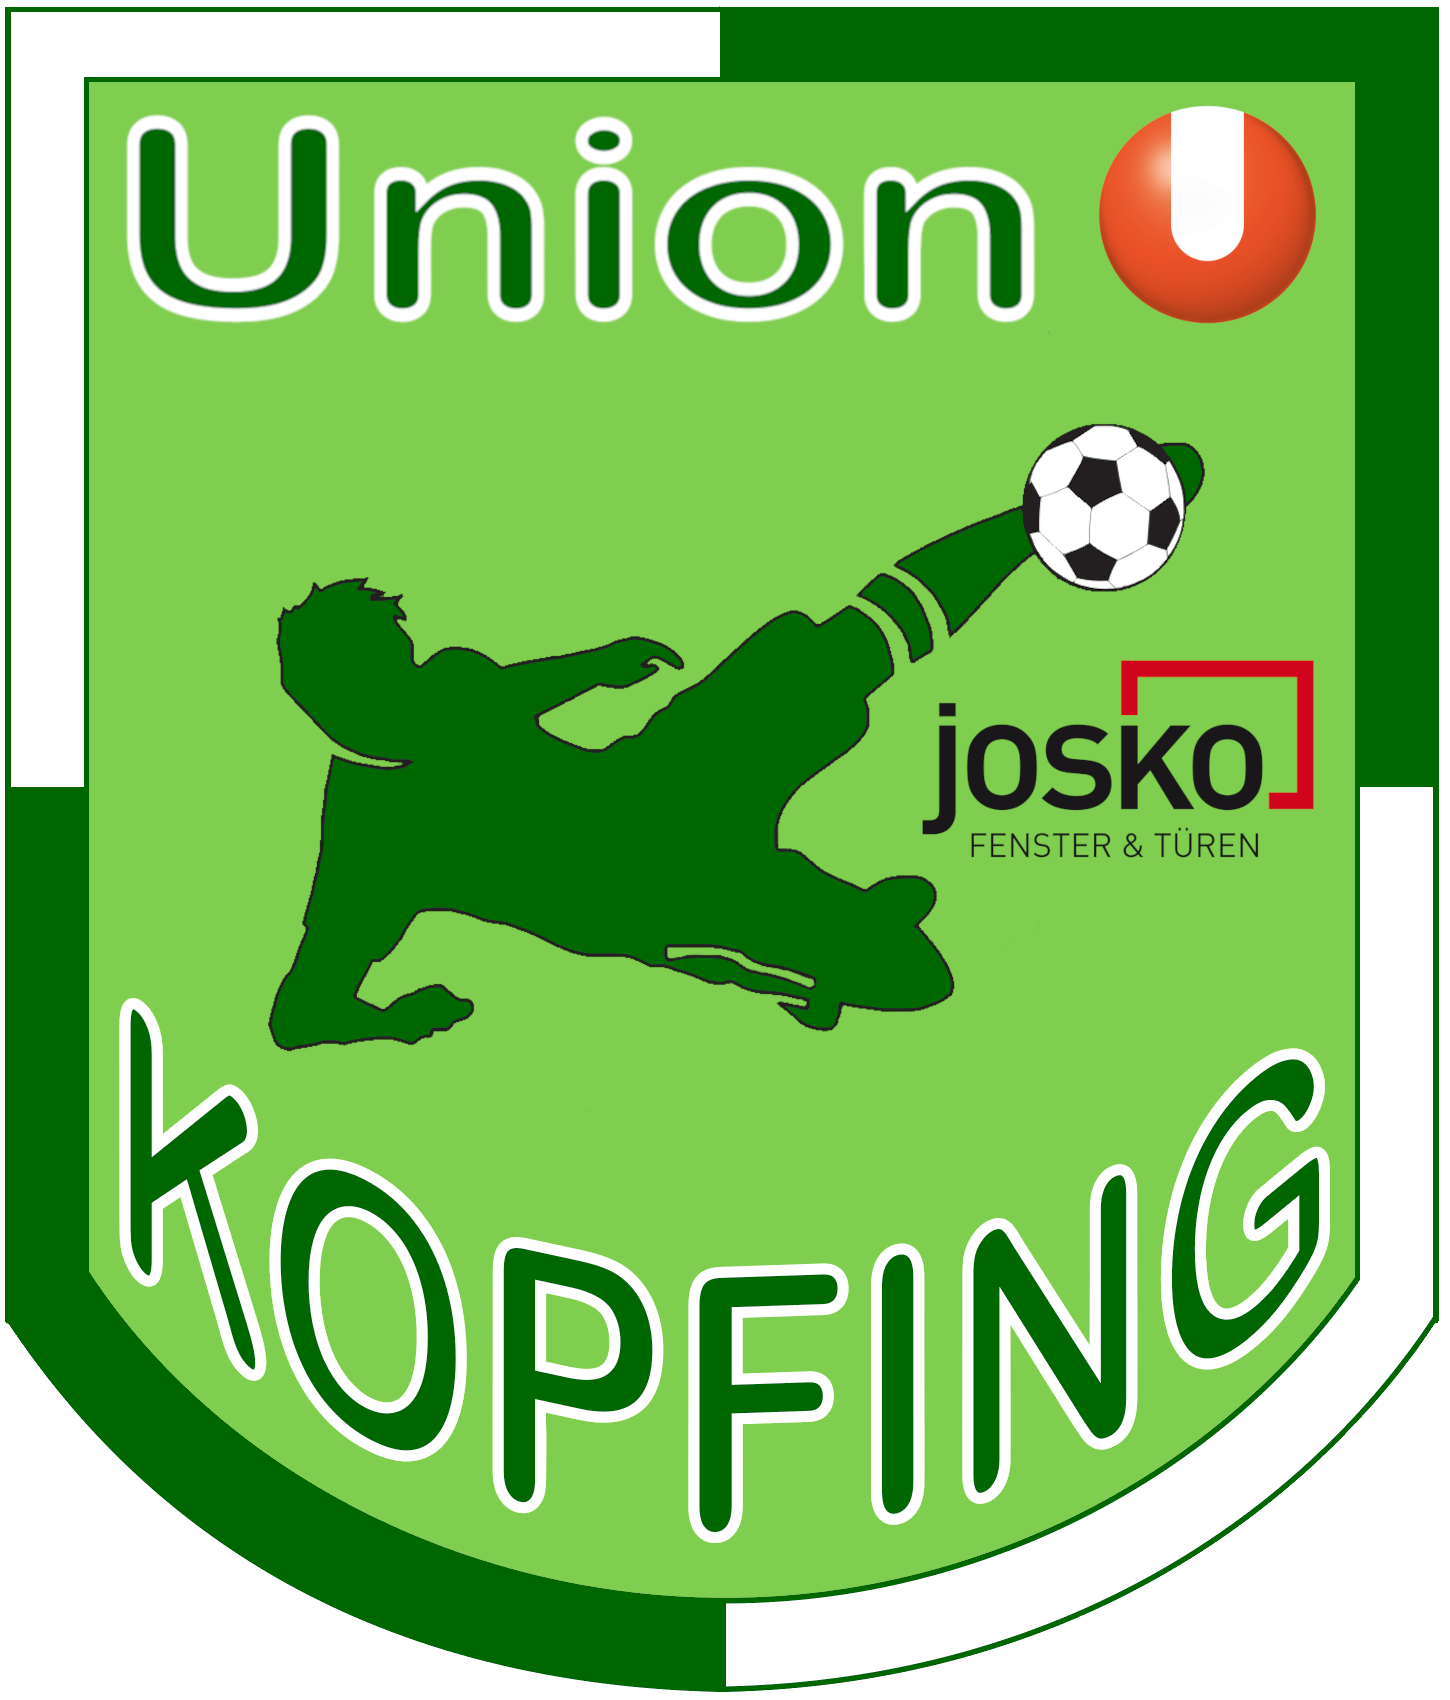 Union Kopfing Logo